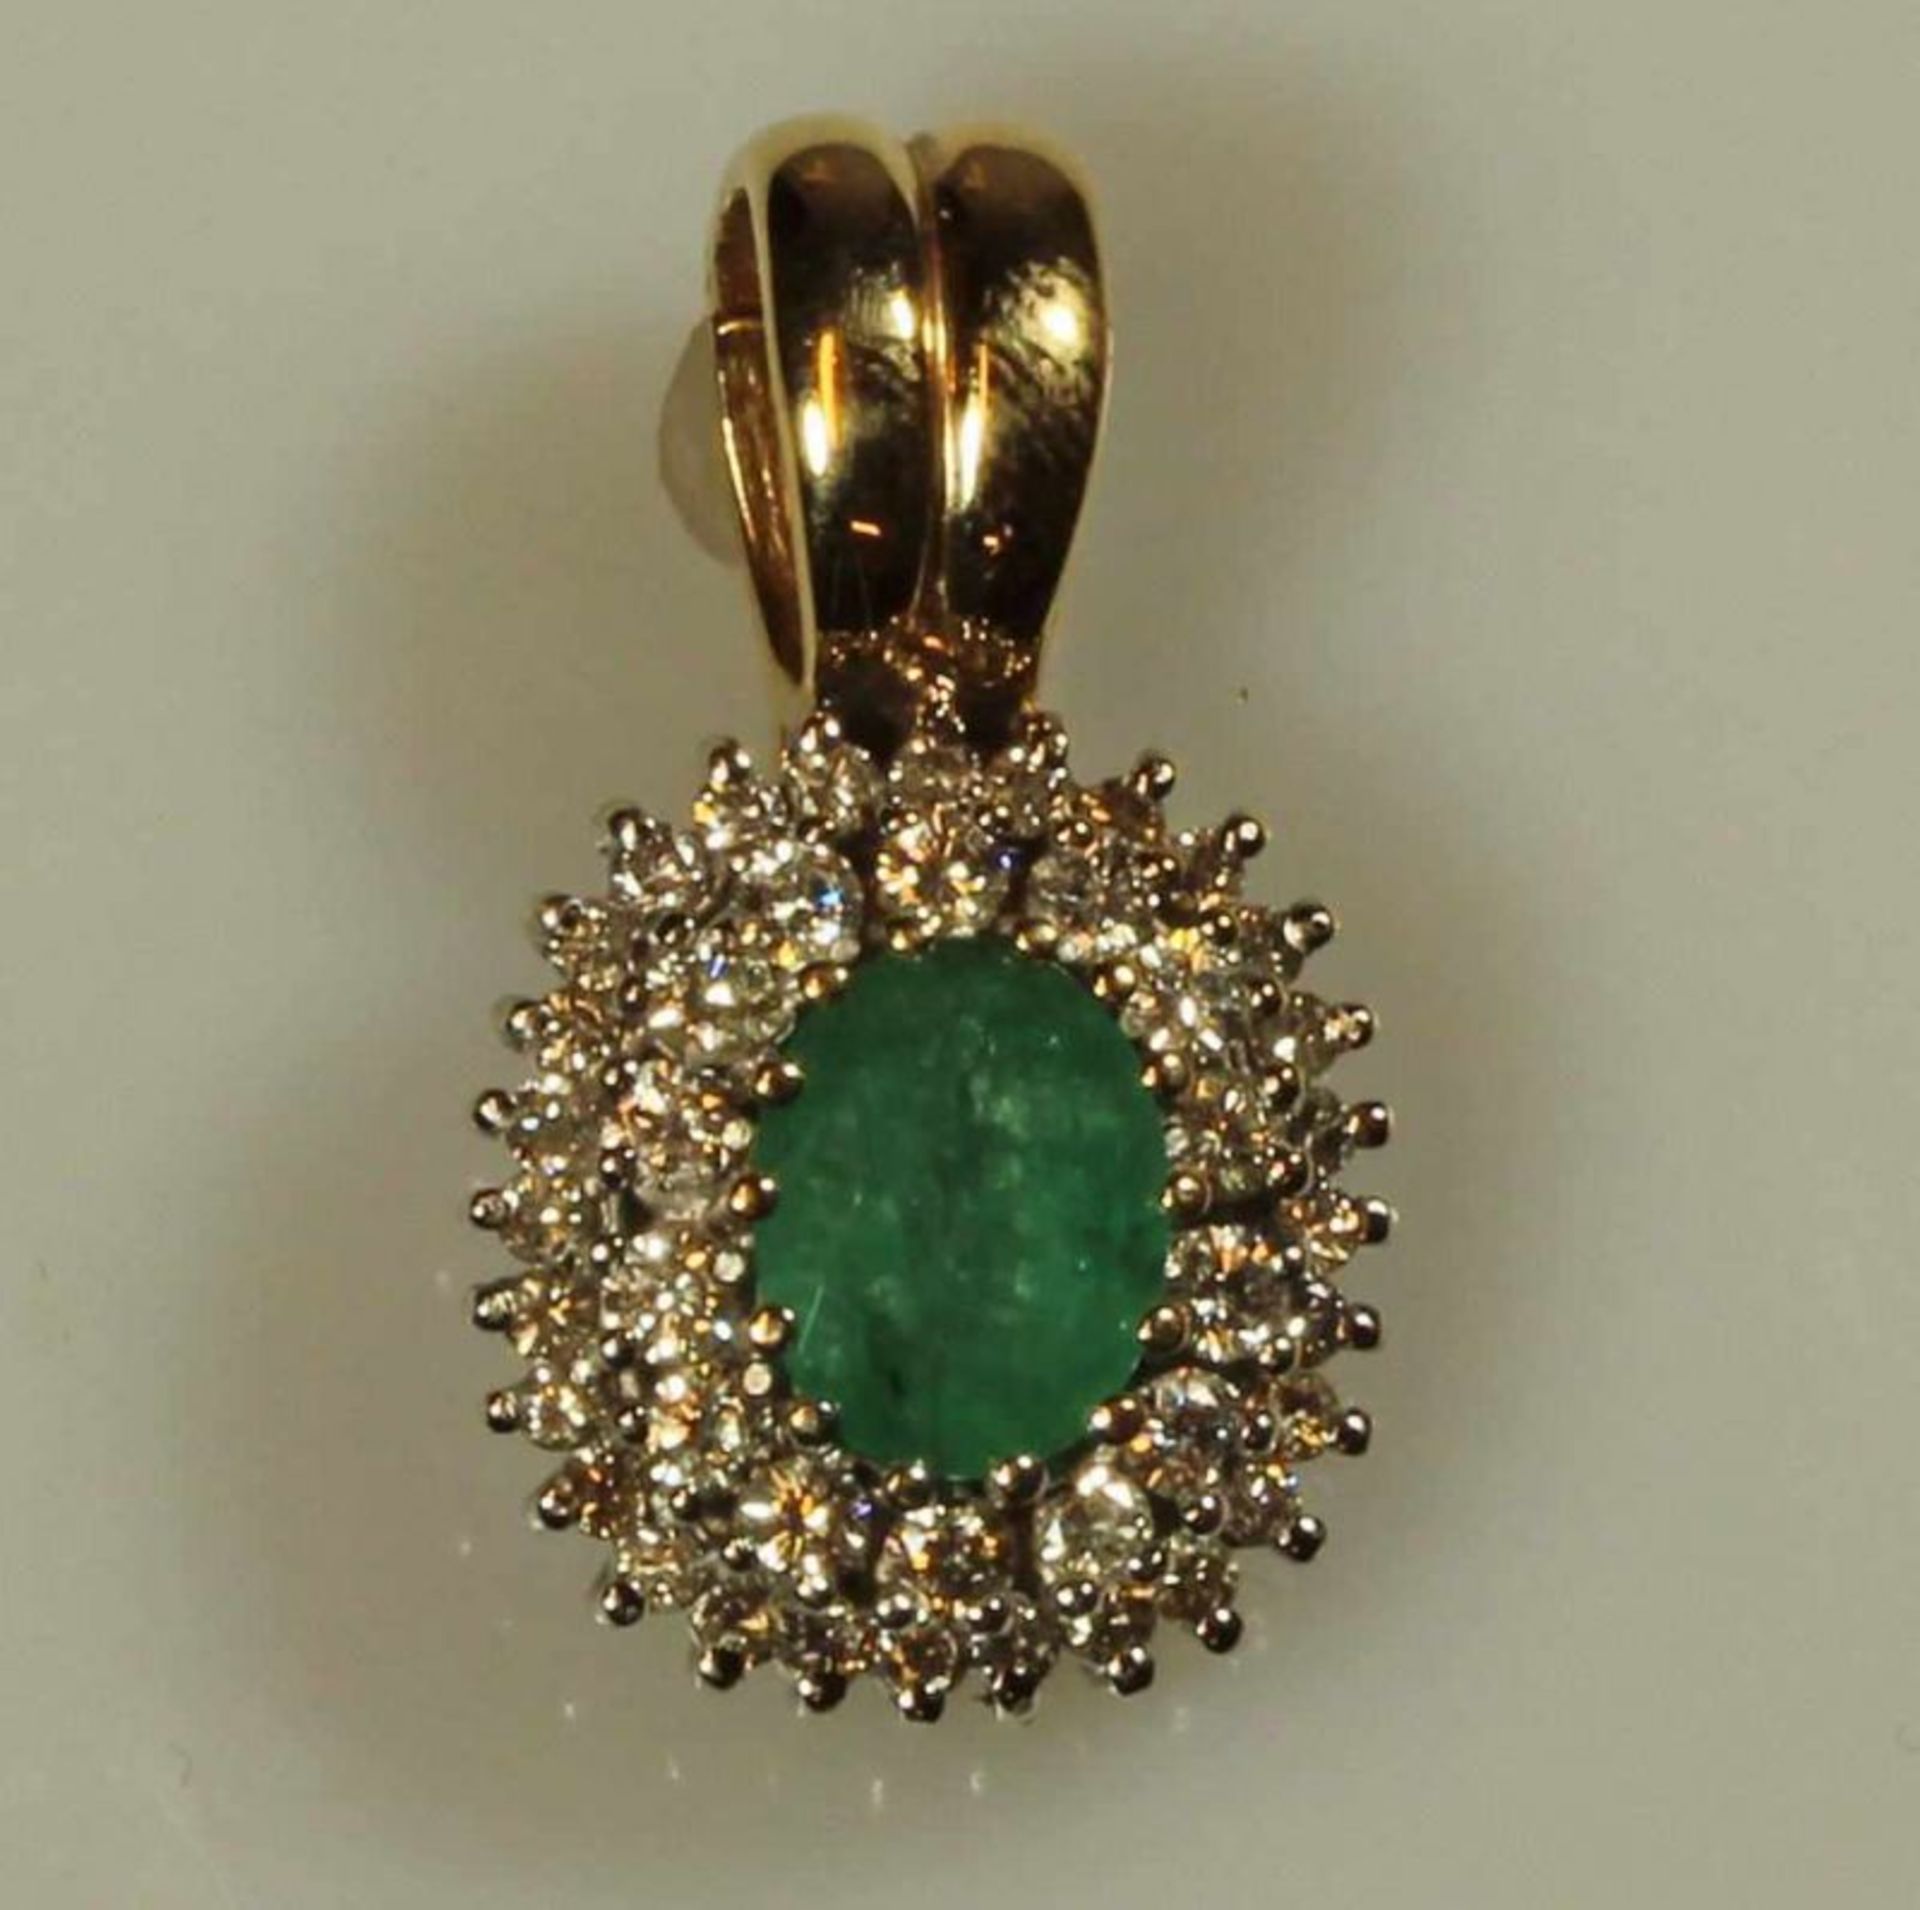 Collieranhänger mit Clipöse, WG/GG 585, 1 oval facettierte Smaragd, 42 Brillanten zus. ca. 0.60 ct.,